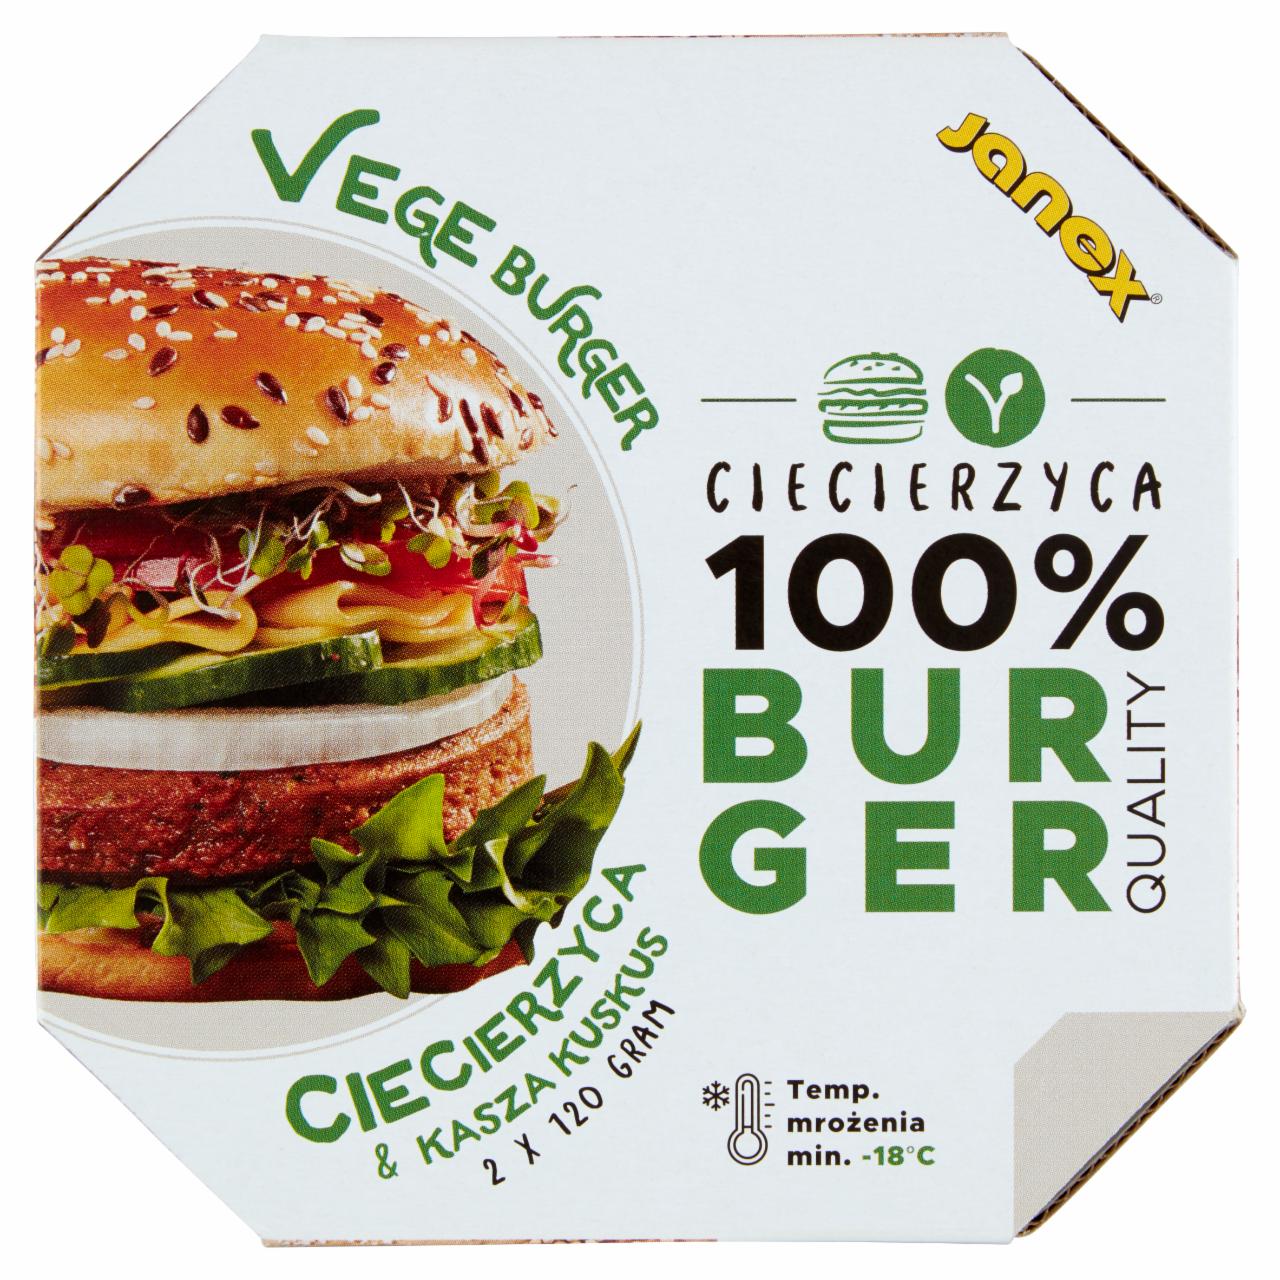 Zdjęcia - Vege burger z ciecierzycy i kaszy kuskus 240 g (2 x 120 g)